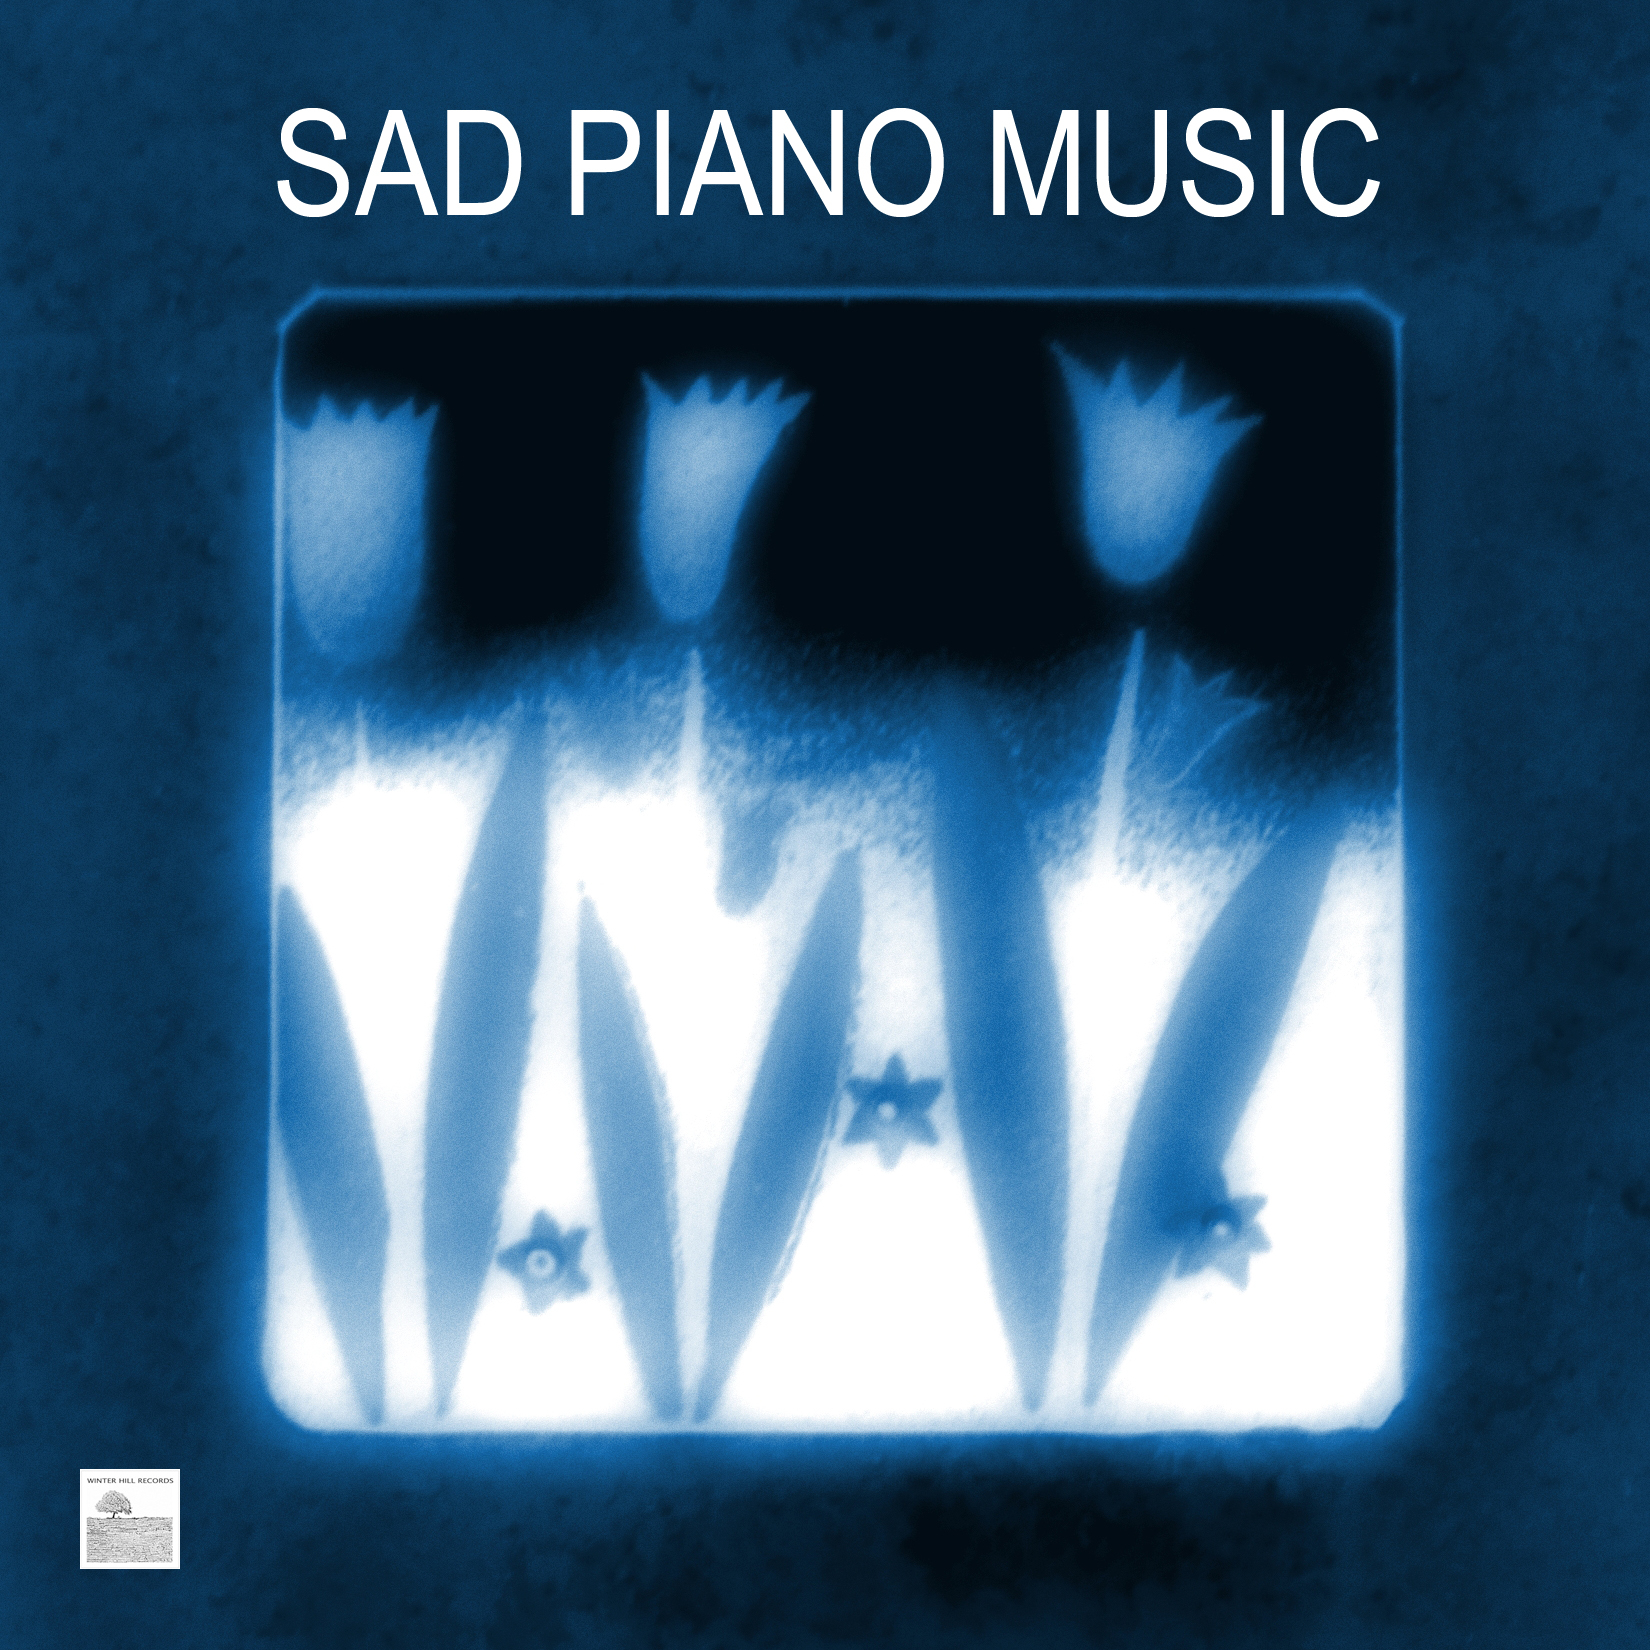 Sad Piano Music- Sad Piano Songs and Melancholy Music